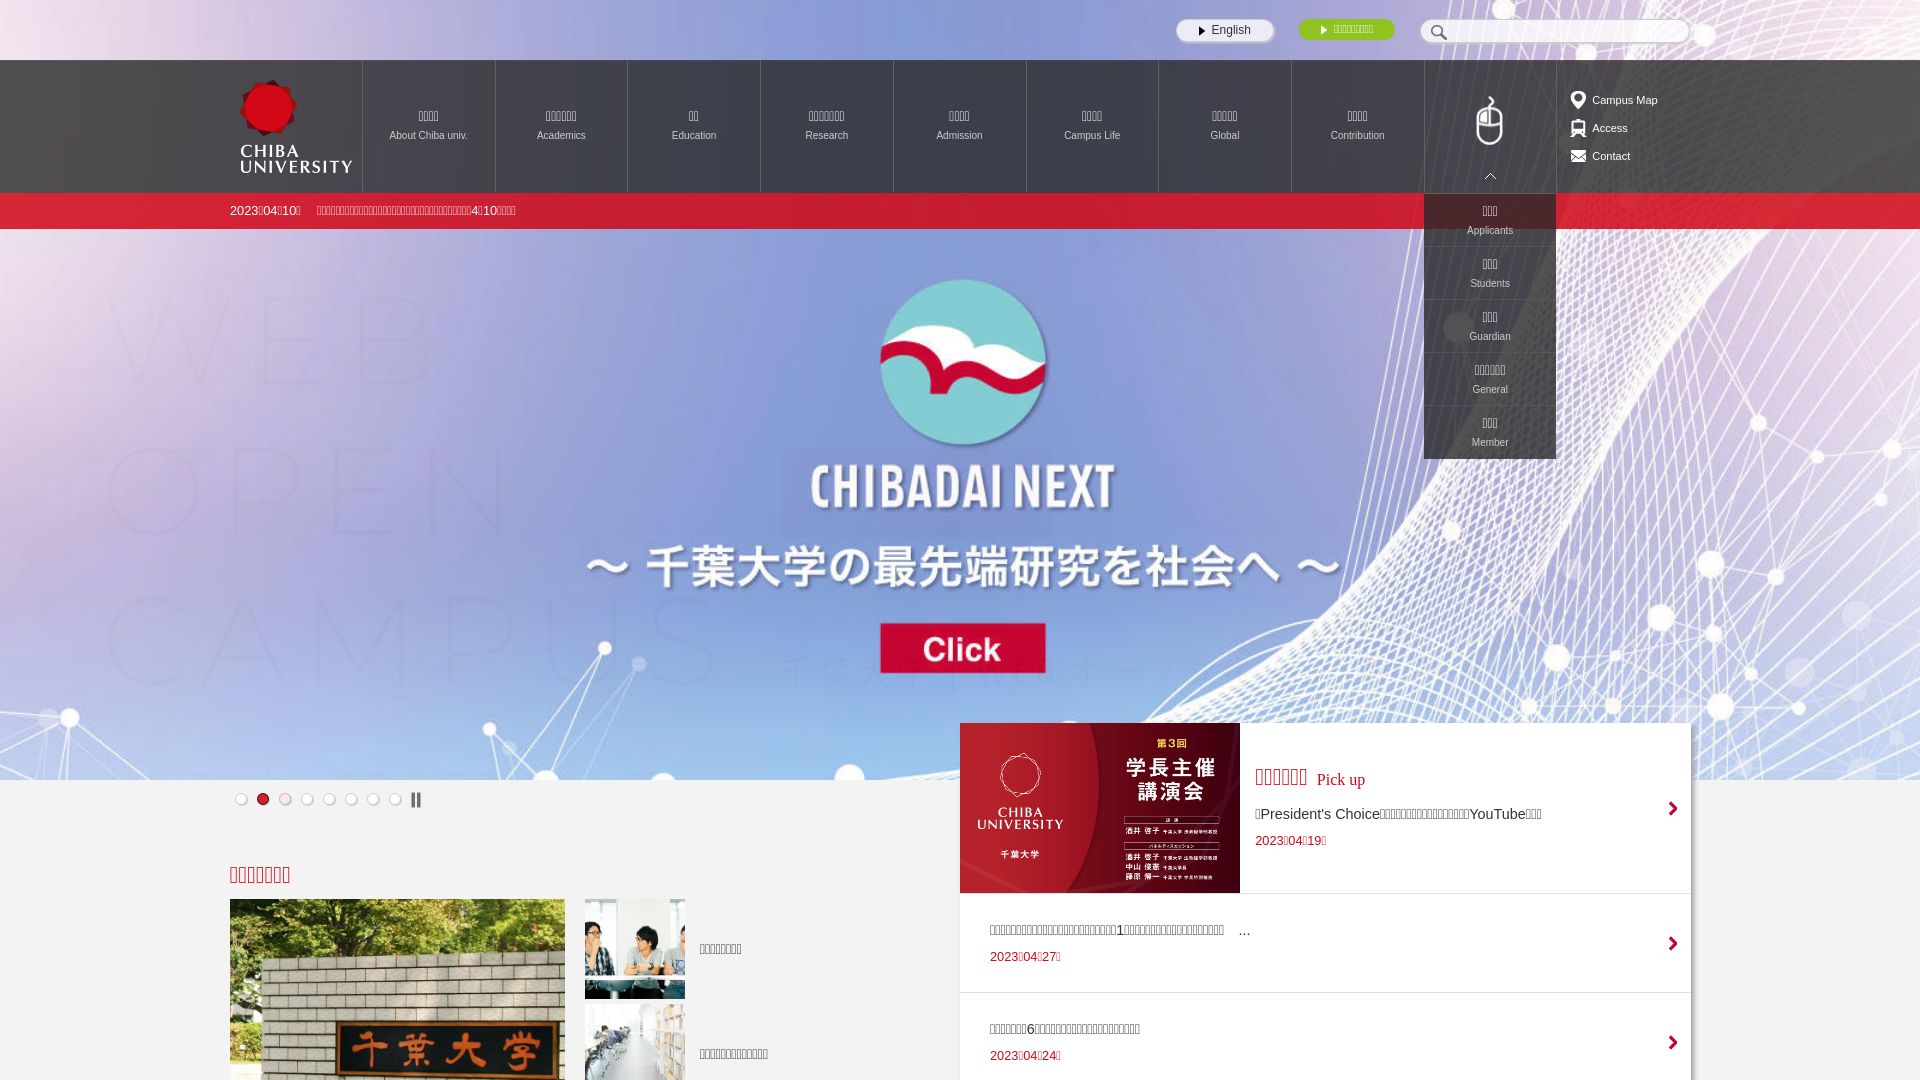 网站状态 chiba-u.ac.jp 是  在线的